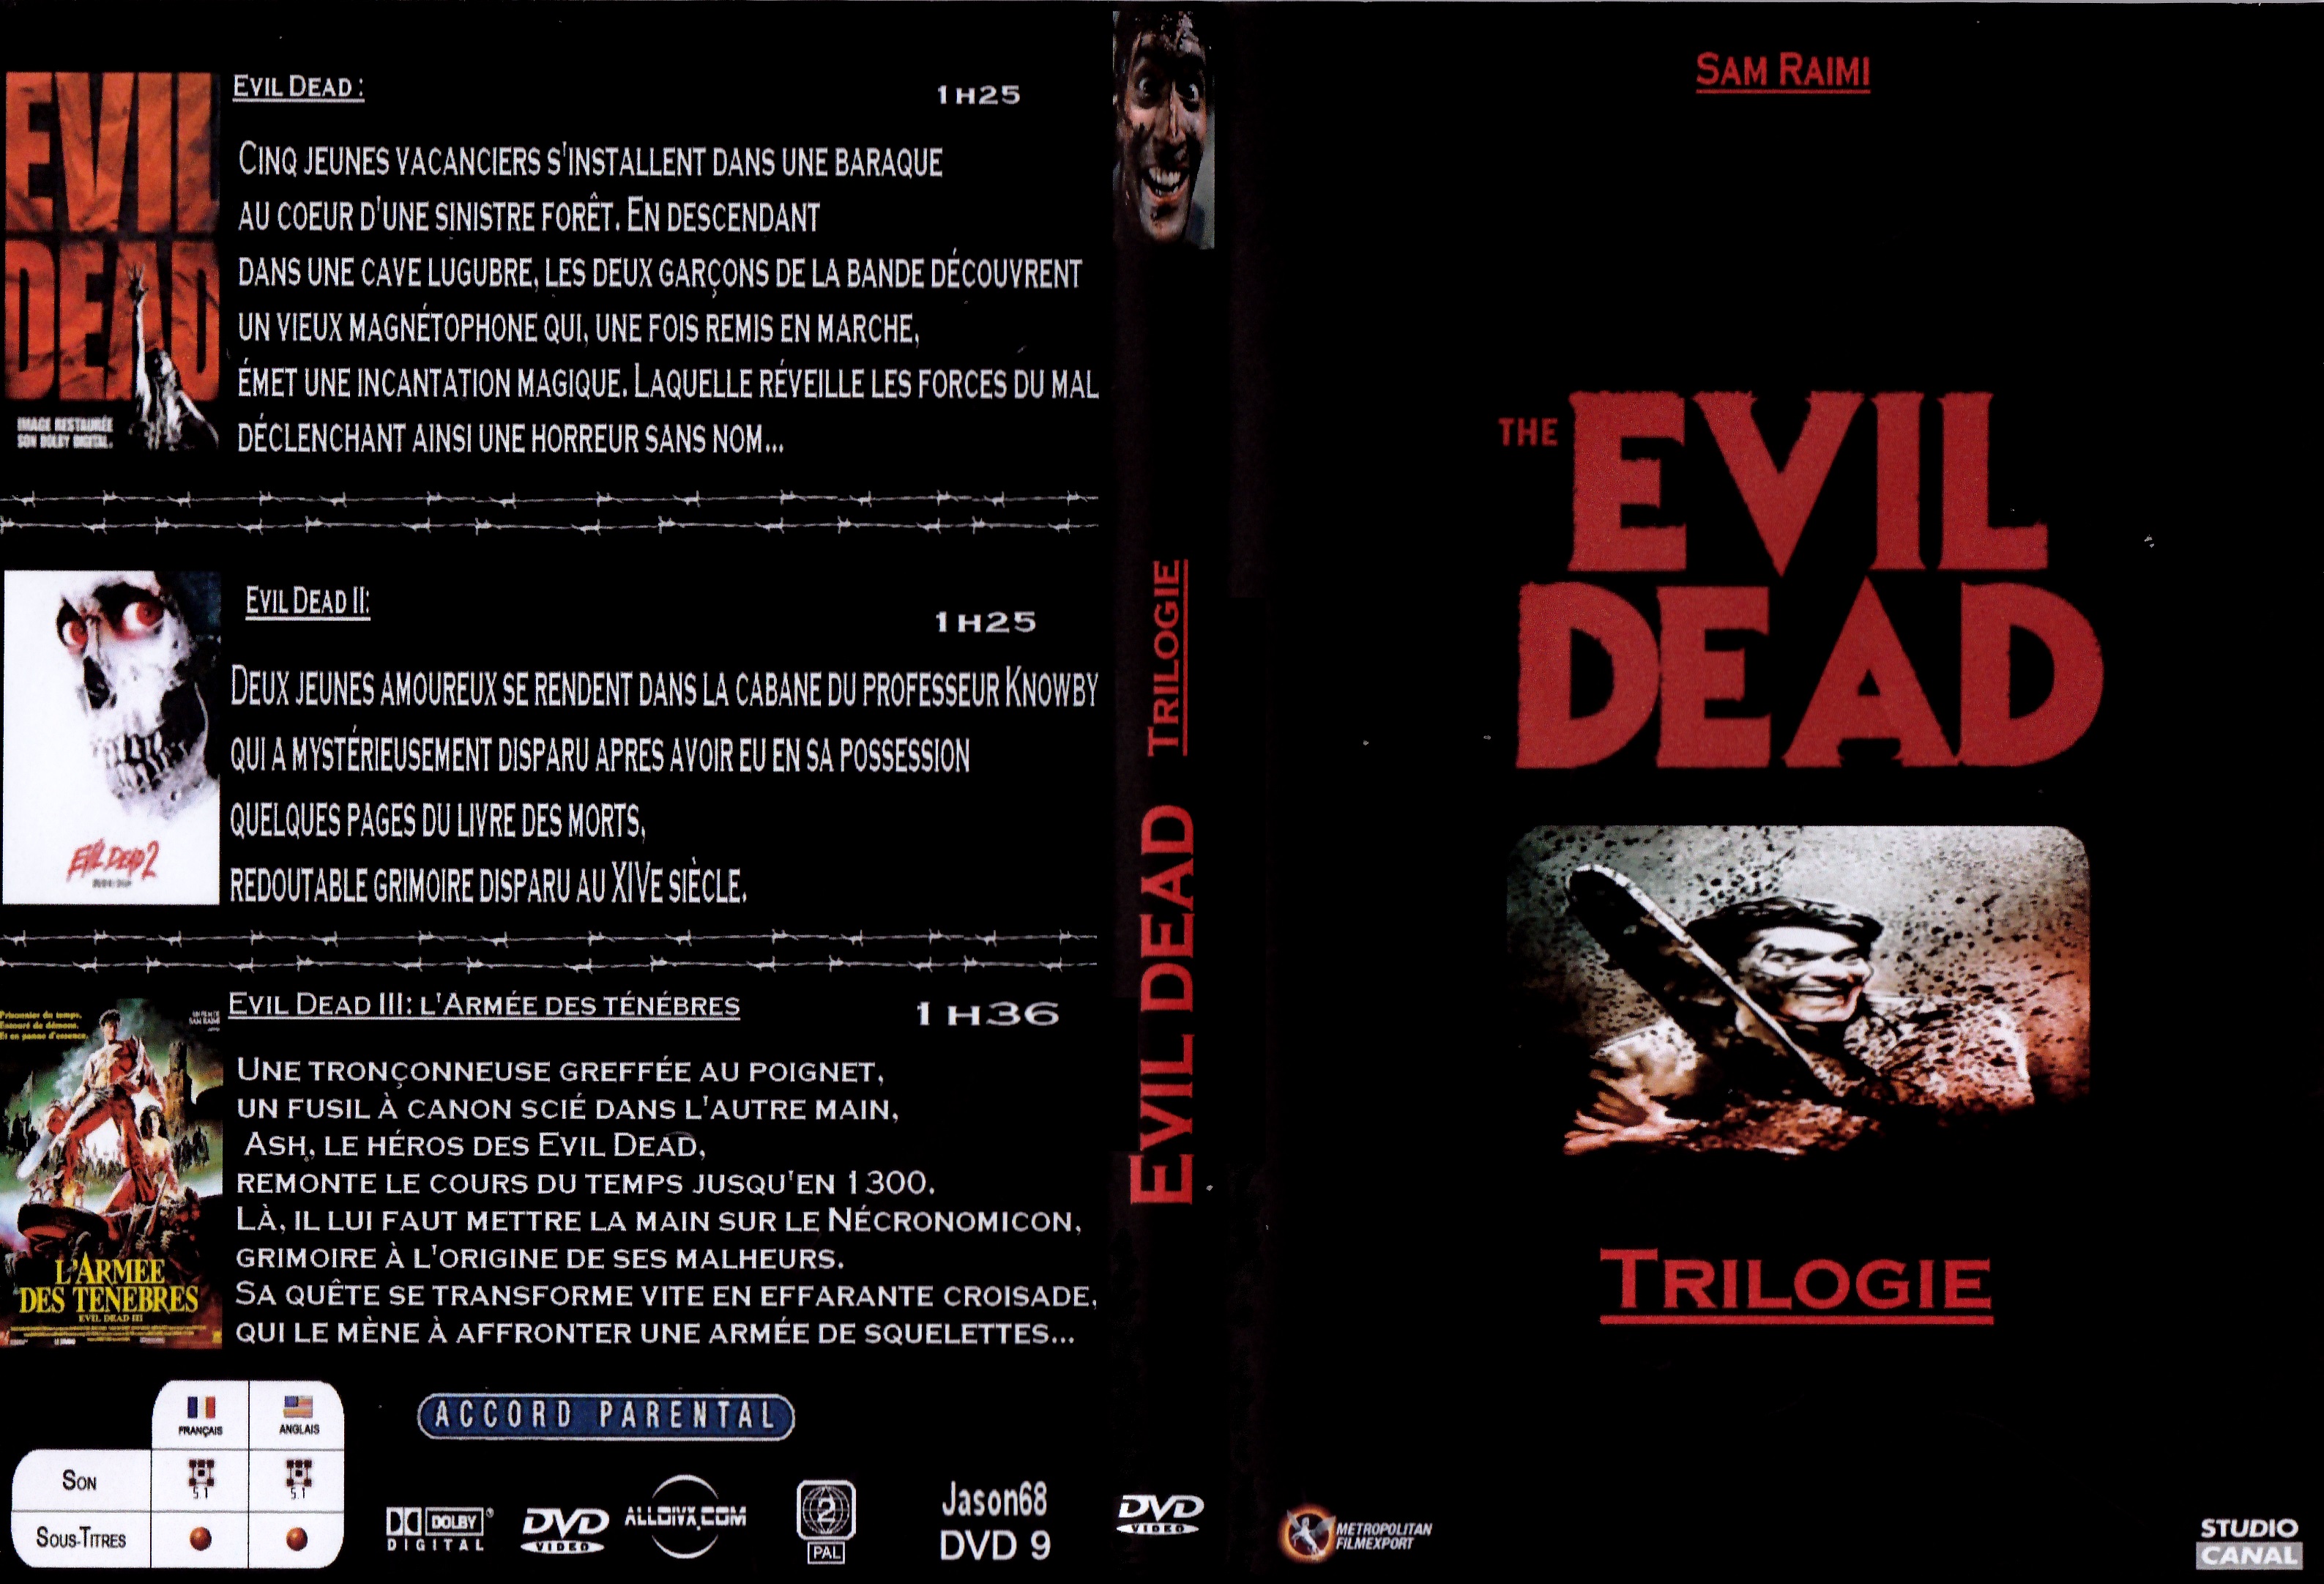 Jaquette DVD Evil Dead Trilogie 